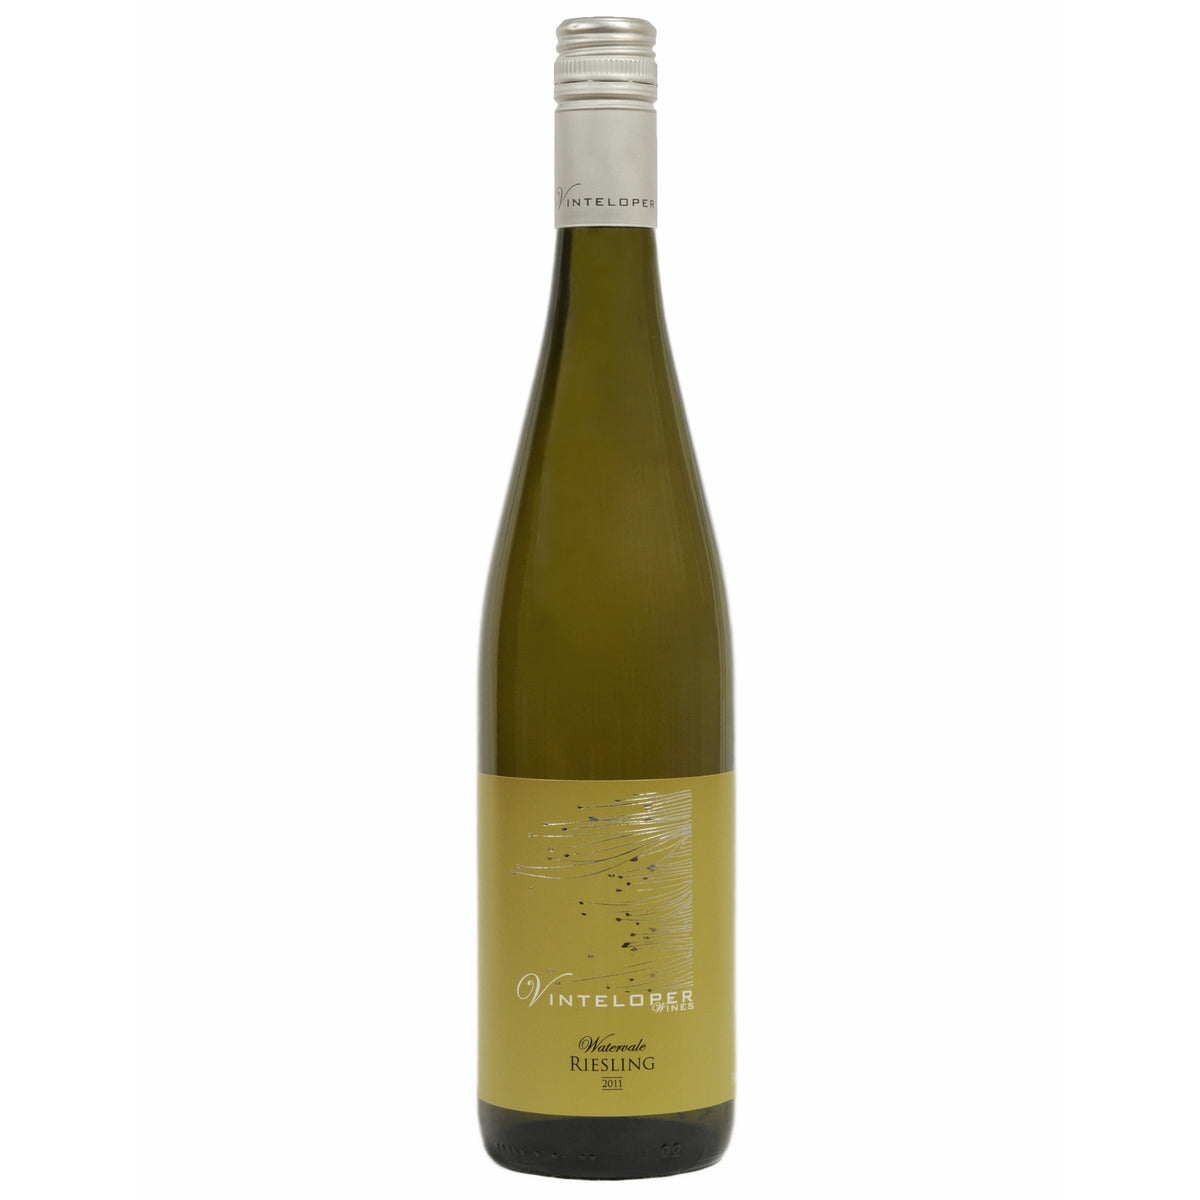 Vinteloper - Museum Release - Riesling 2012 - Adelaide Hills Wine